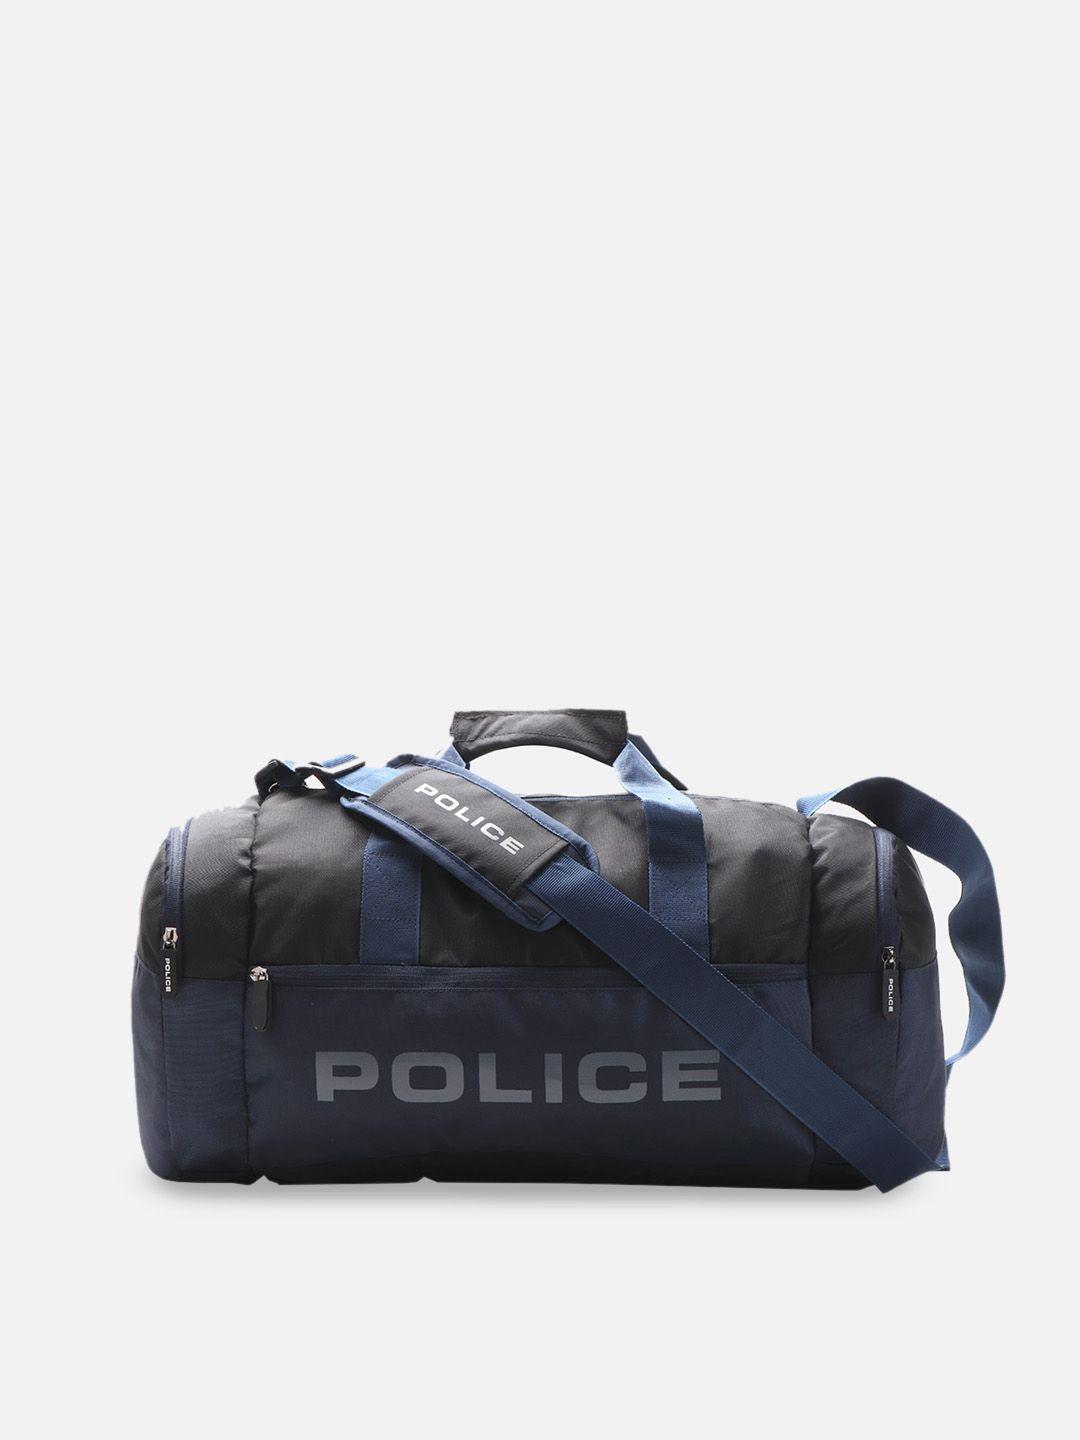 police printed duffel bag